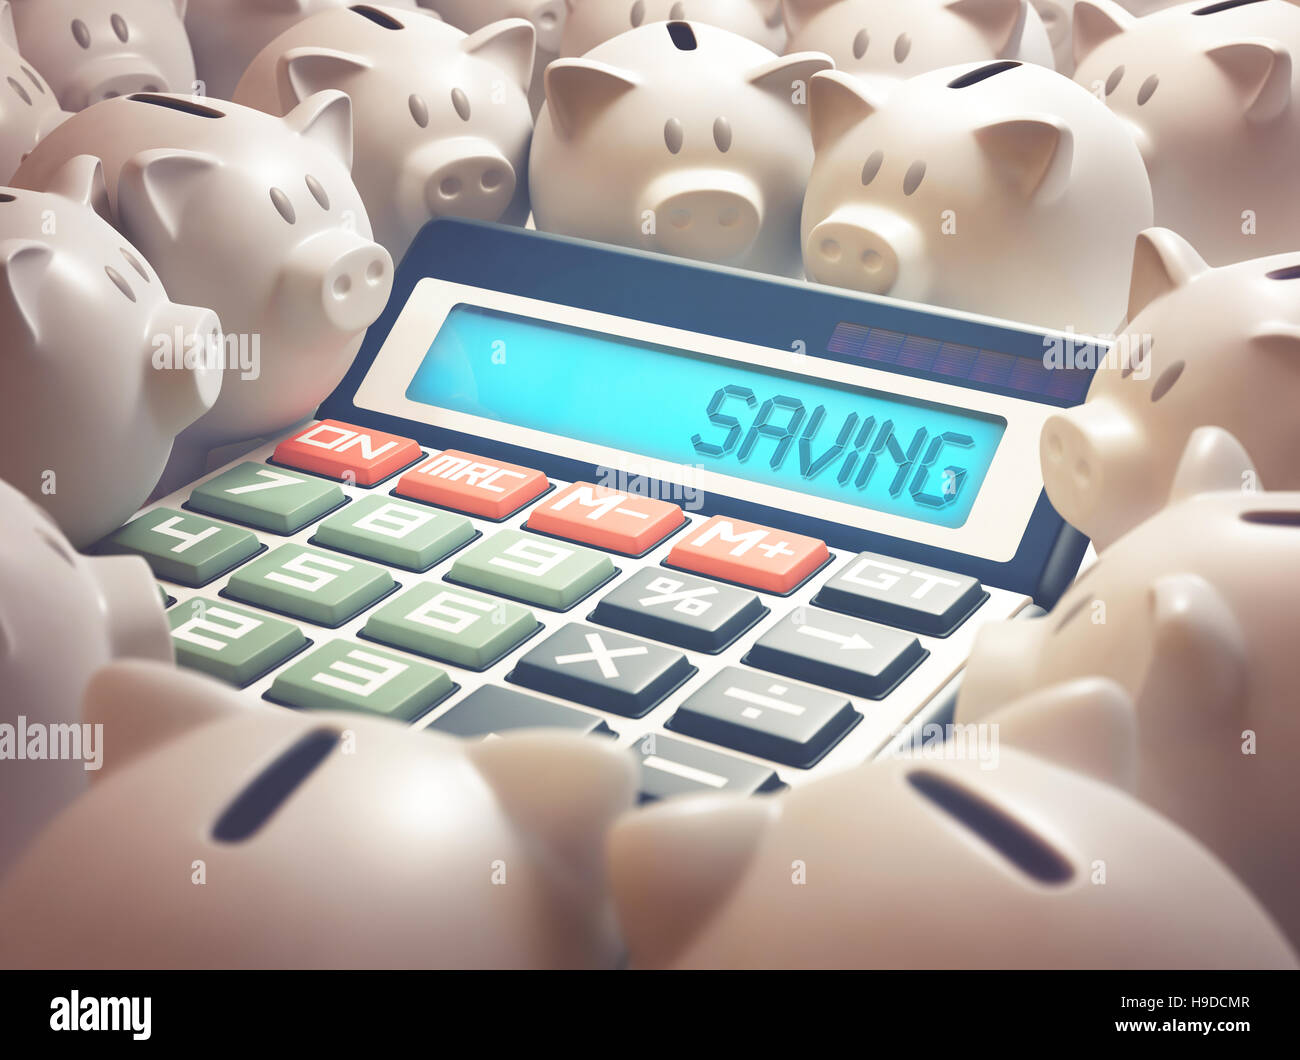 Calculadora en medio de varios hucha mostrando en la pantalla la palabra 'Saving'. Ilustración 3D, negocios y finanzas concepto. Foto de stock